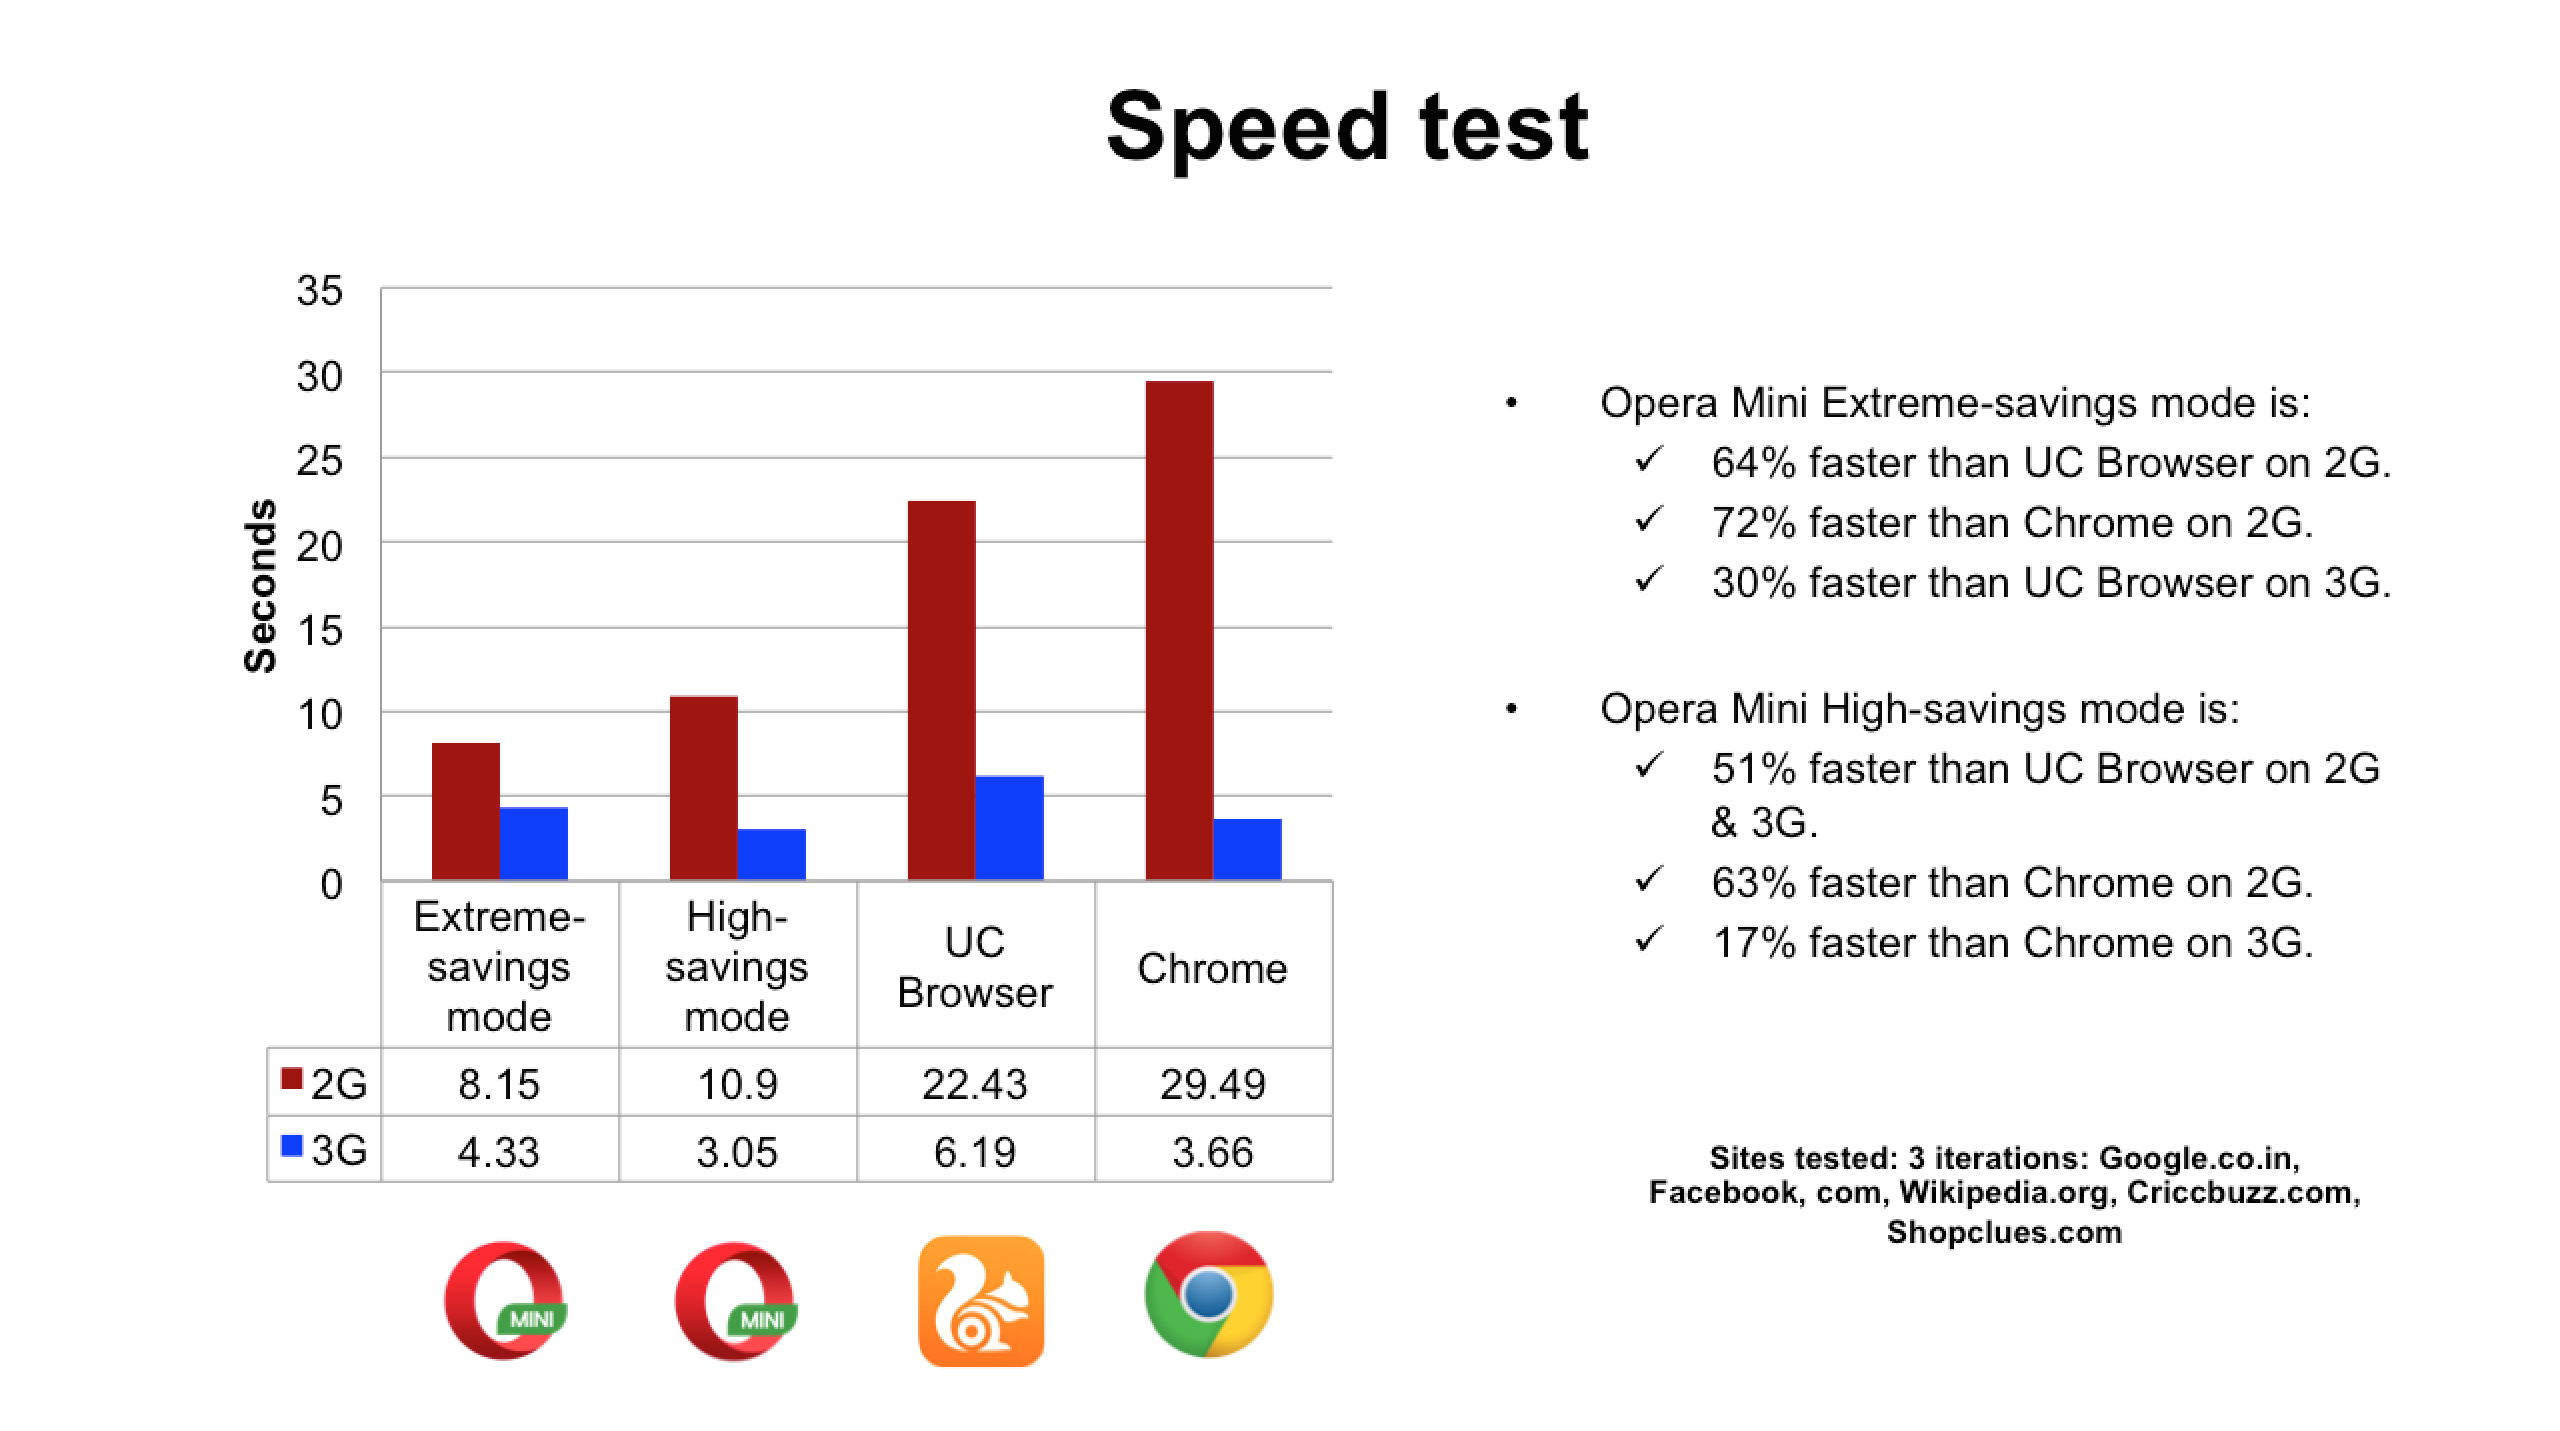 Opera Mini contra UC Mini: ¿Cuál es el mejor navegador? 38